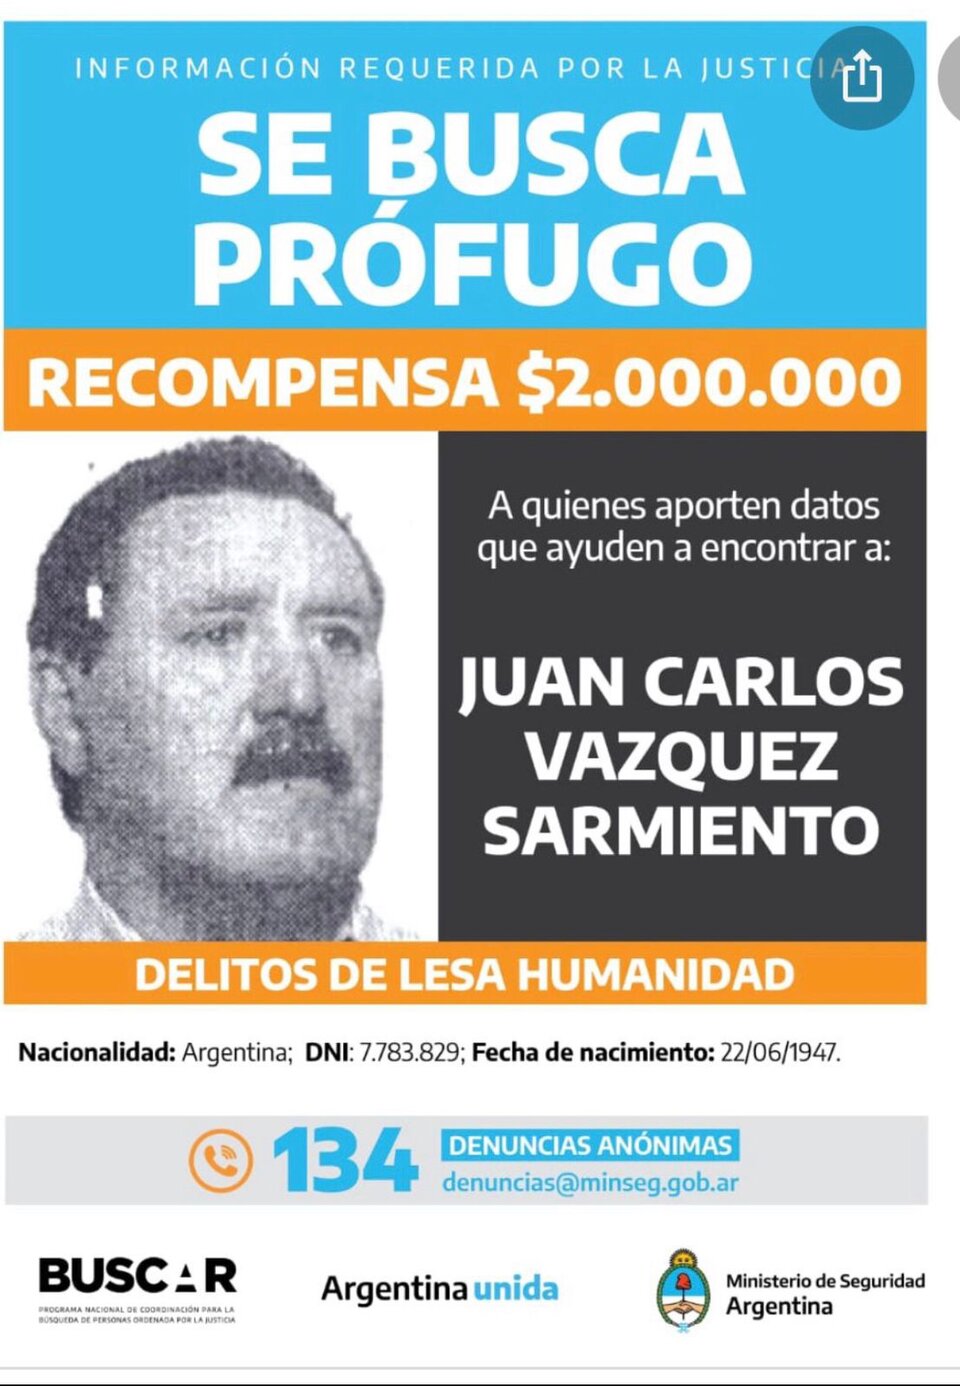 Fue detenido el represor Juan Carlos Vázquez Sarmiento